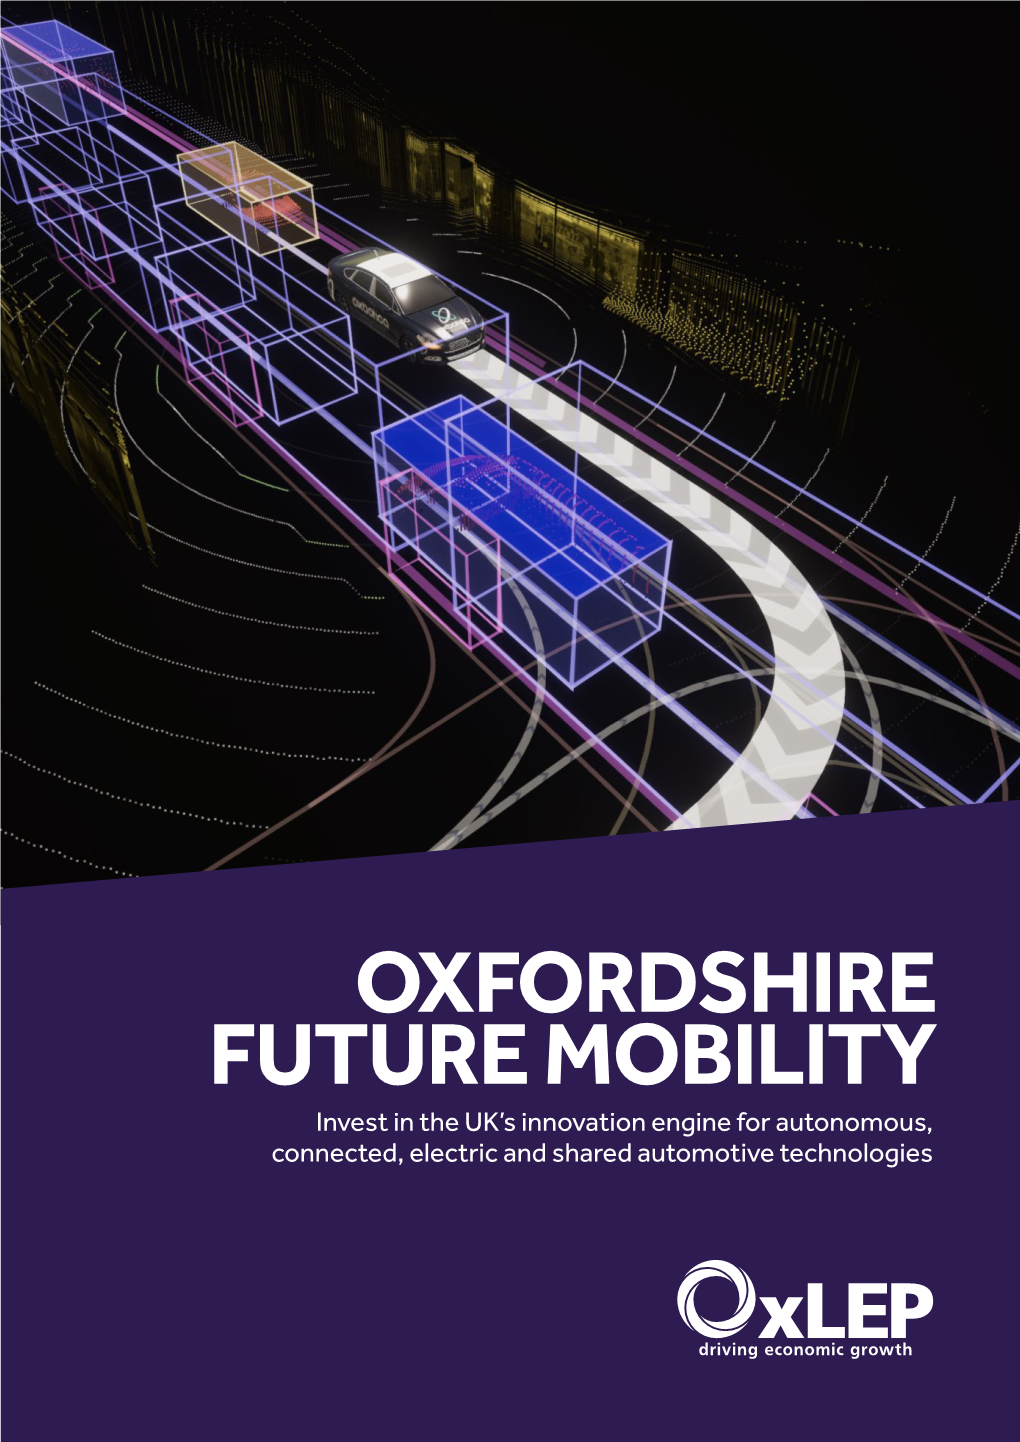 Oxfordshire Future Mobility